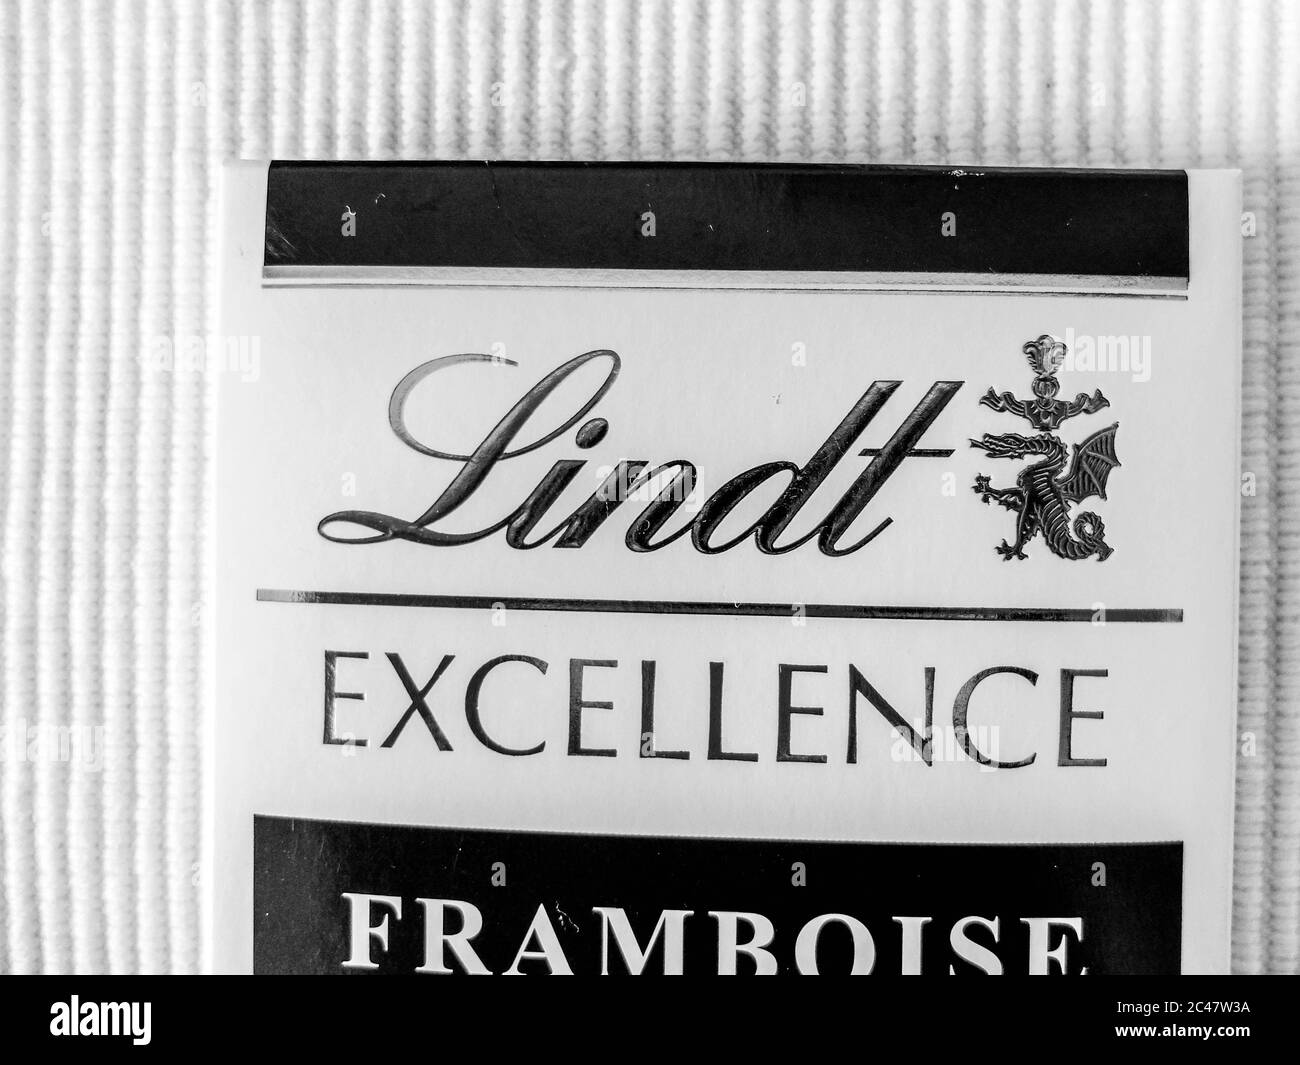 Barre de chocolat Lindt, emballage. Lindt est une marque de chocolat suisse de luxe et de qualité. Banque D'Images